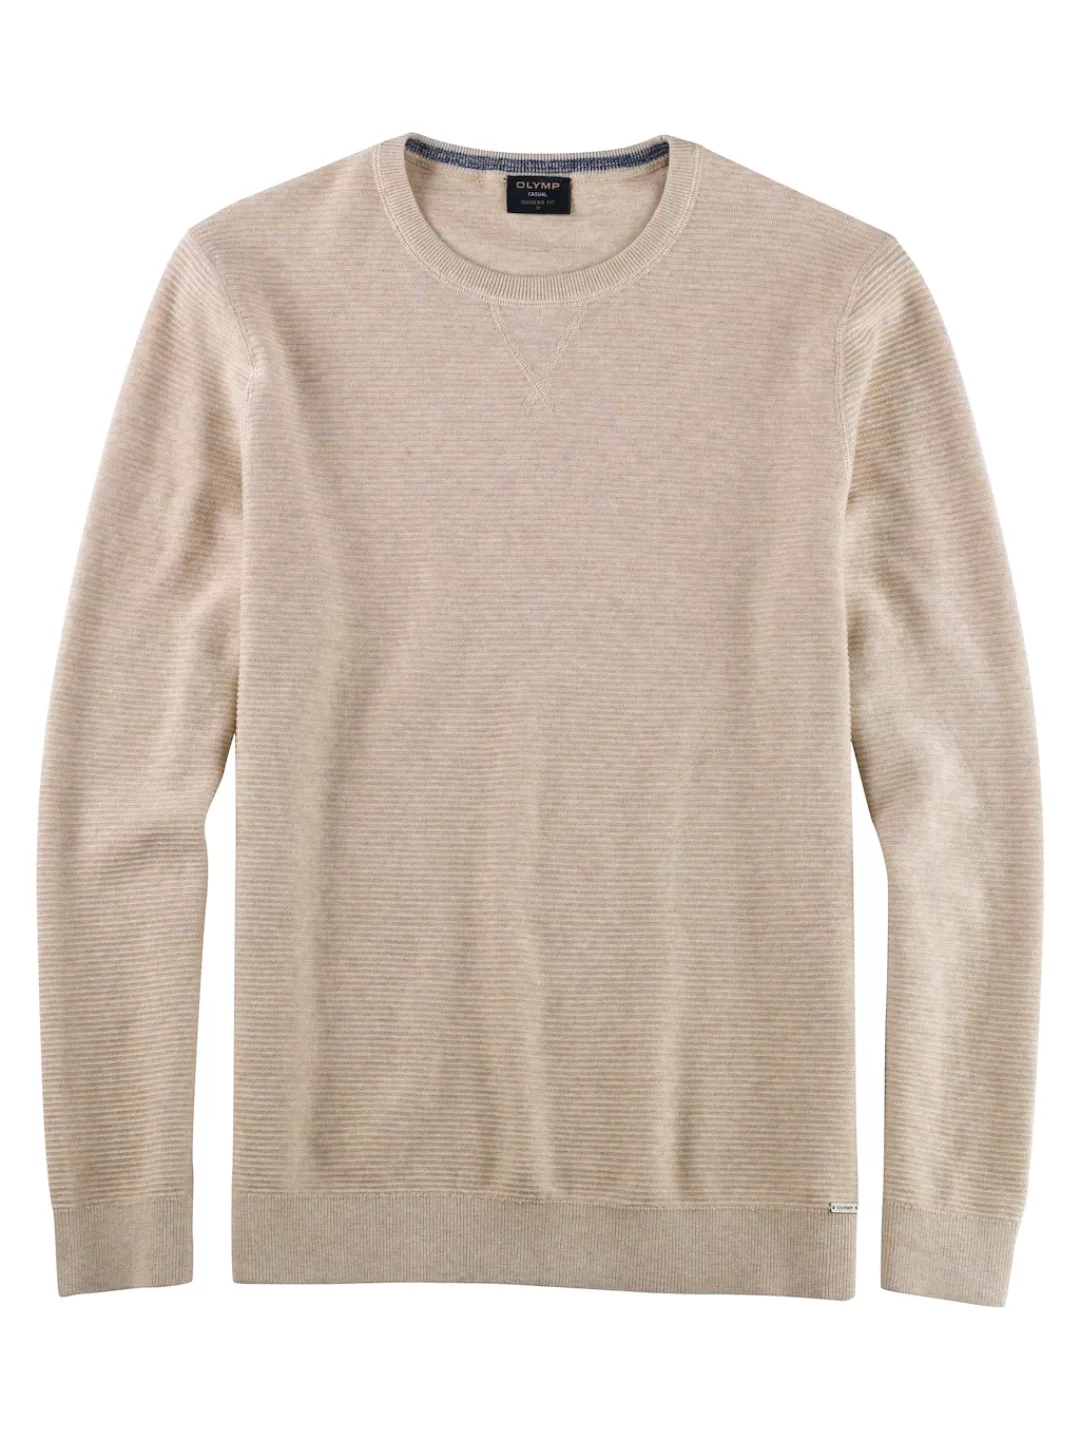 OLYMP Sweatshirt 5301/85 Pullover günstig online kaufen